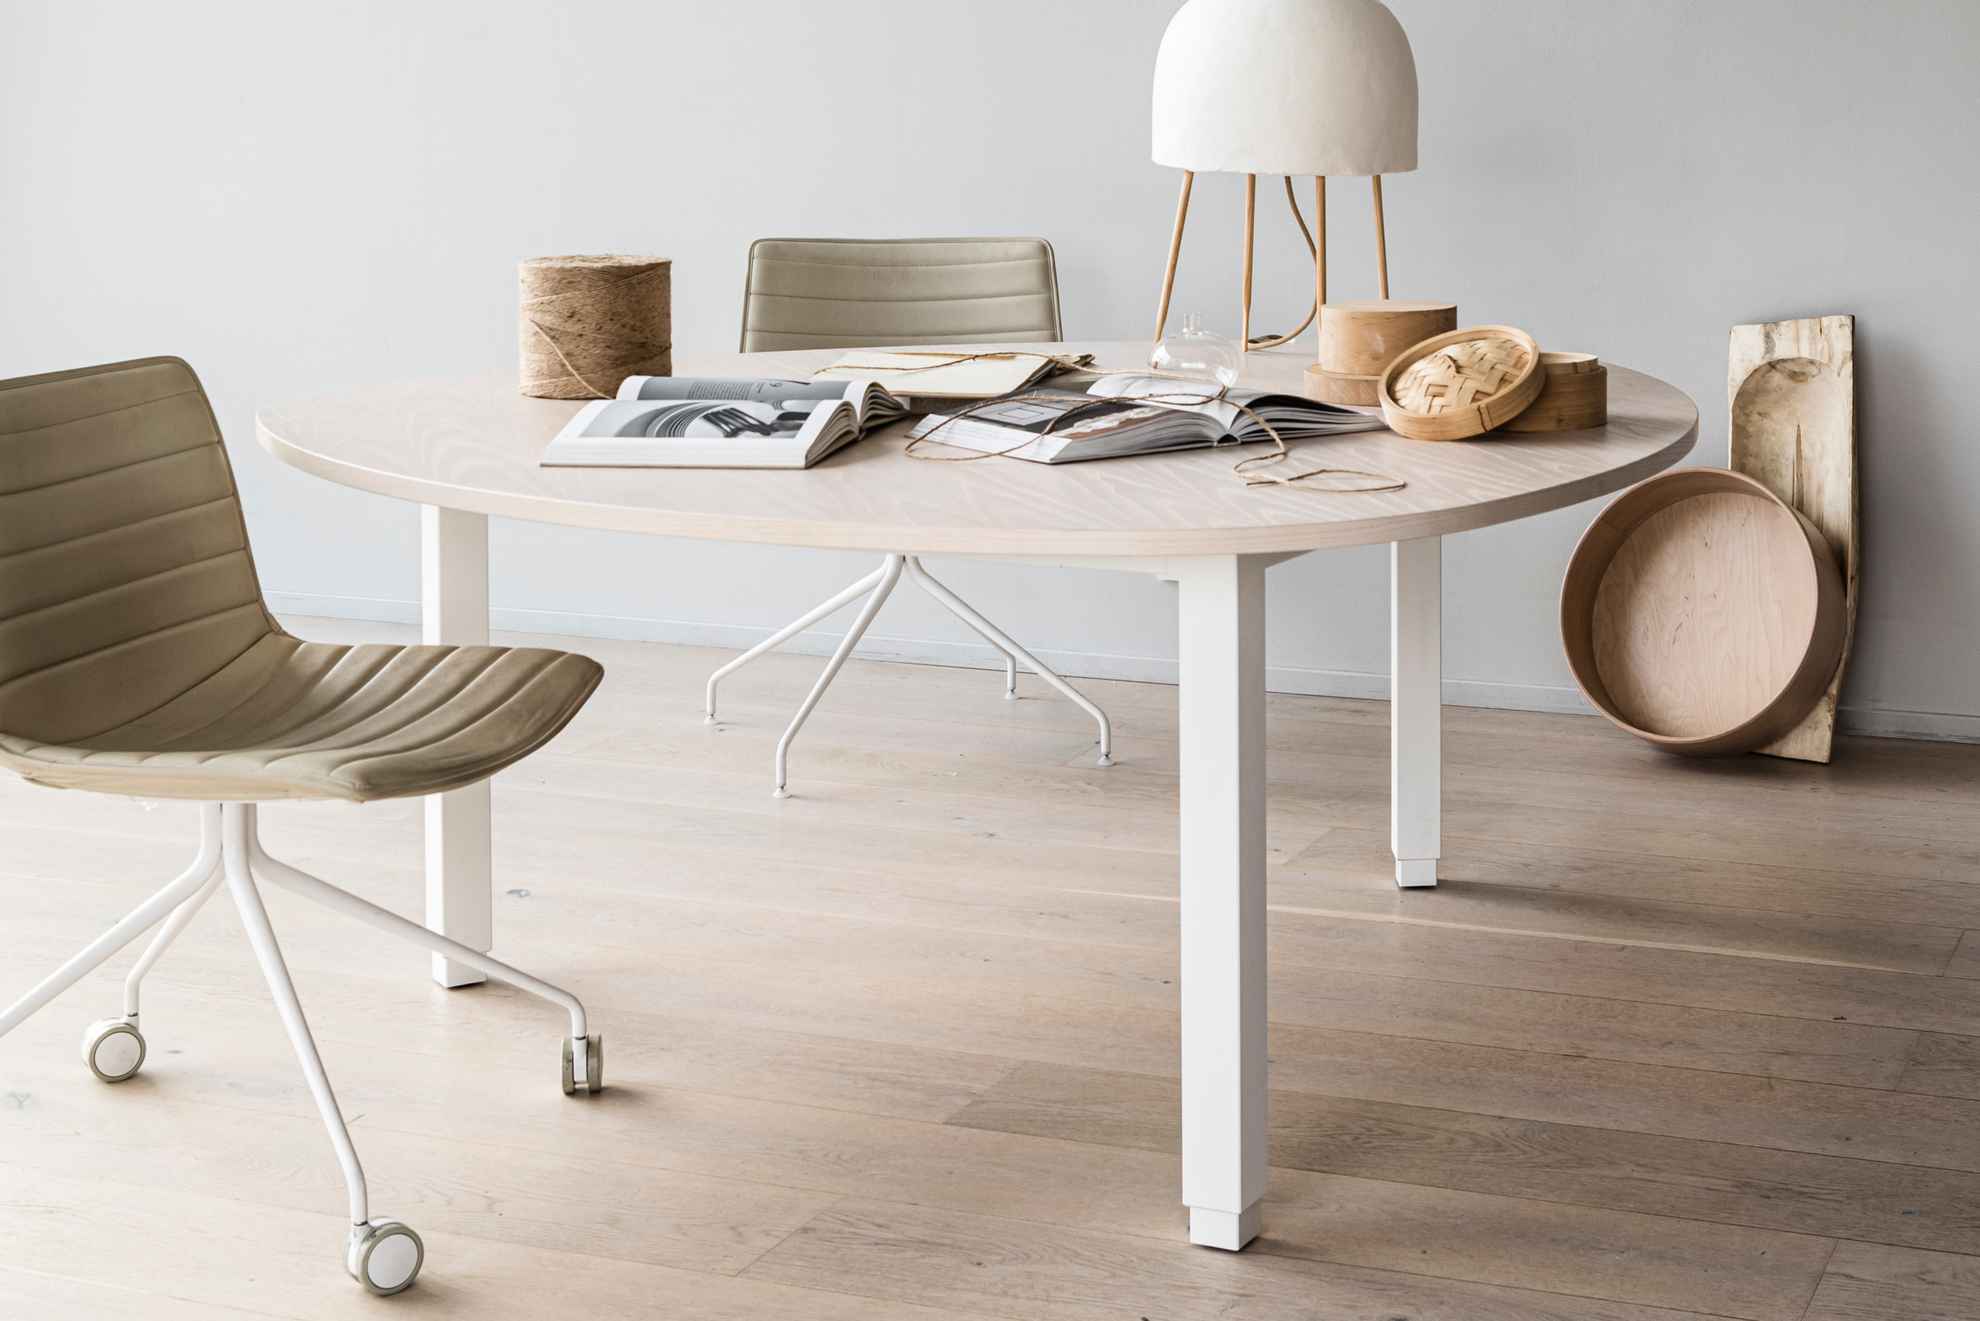 Een design tafel van lichtgekleurd hout op een lichtgekleurde houten vloer. Ernaast staat een bureaustoel op wielen. Op de tafel staan twee opengeslagen boeken en twee houten potten.